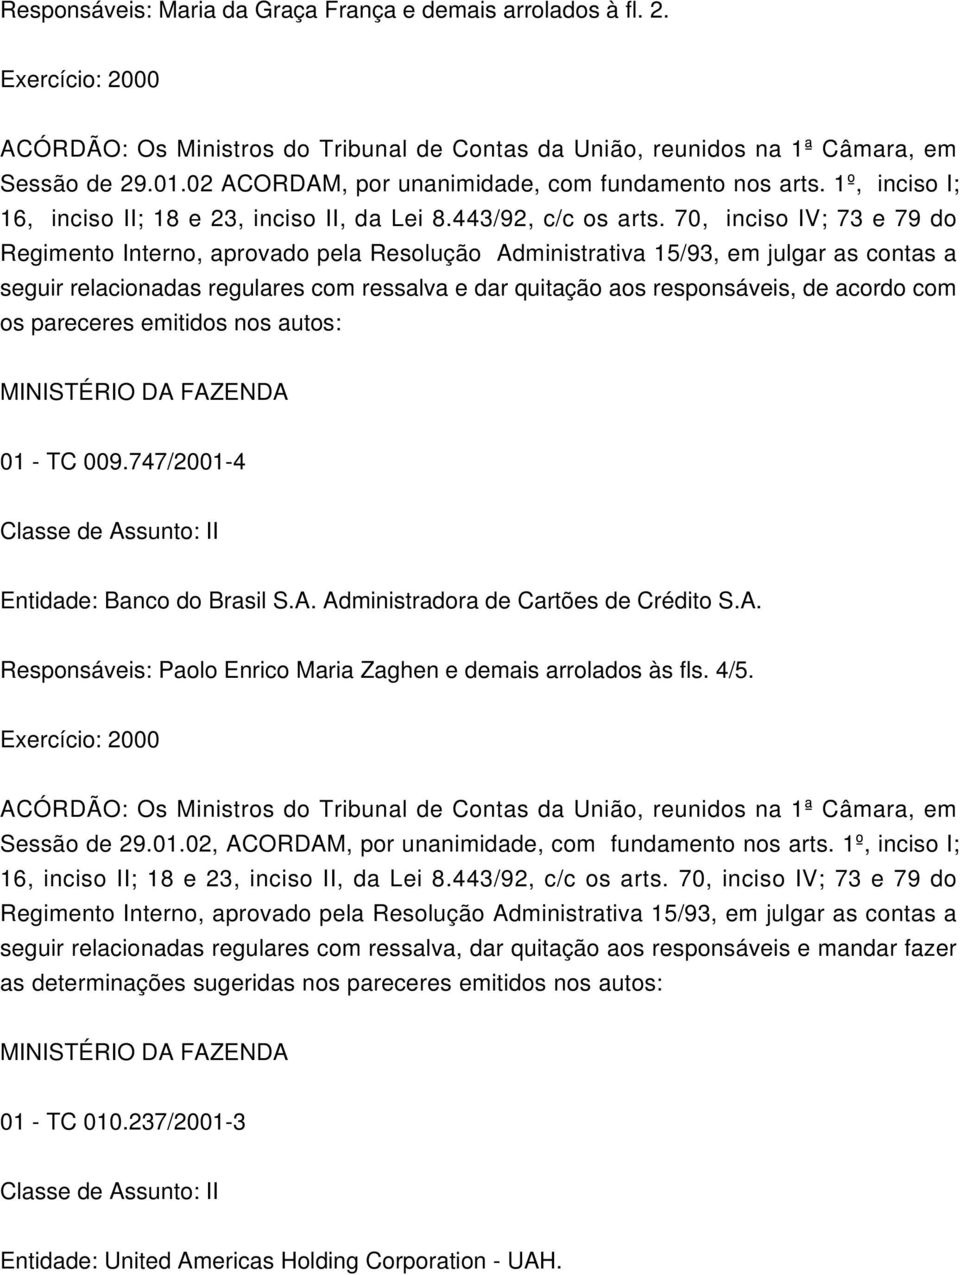 747/2001-4 Entidade: Banco do Brasil S.A. Administradora de Cartões de Crédito S.A. Responsáveis: Paolo Enrico Maria Zaghen e demais arrolados às fls. 4/5.